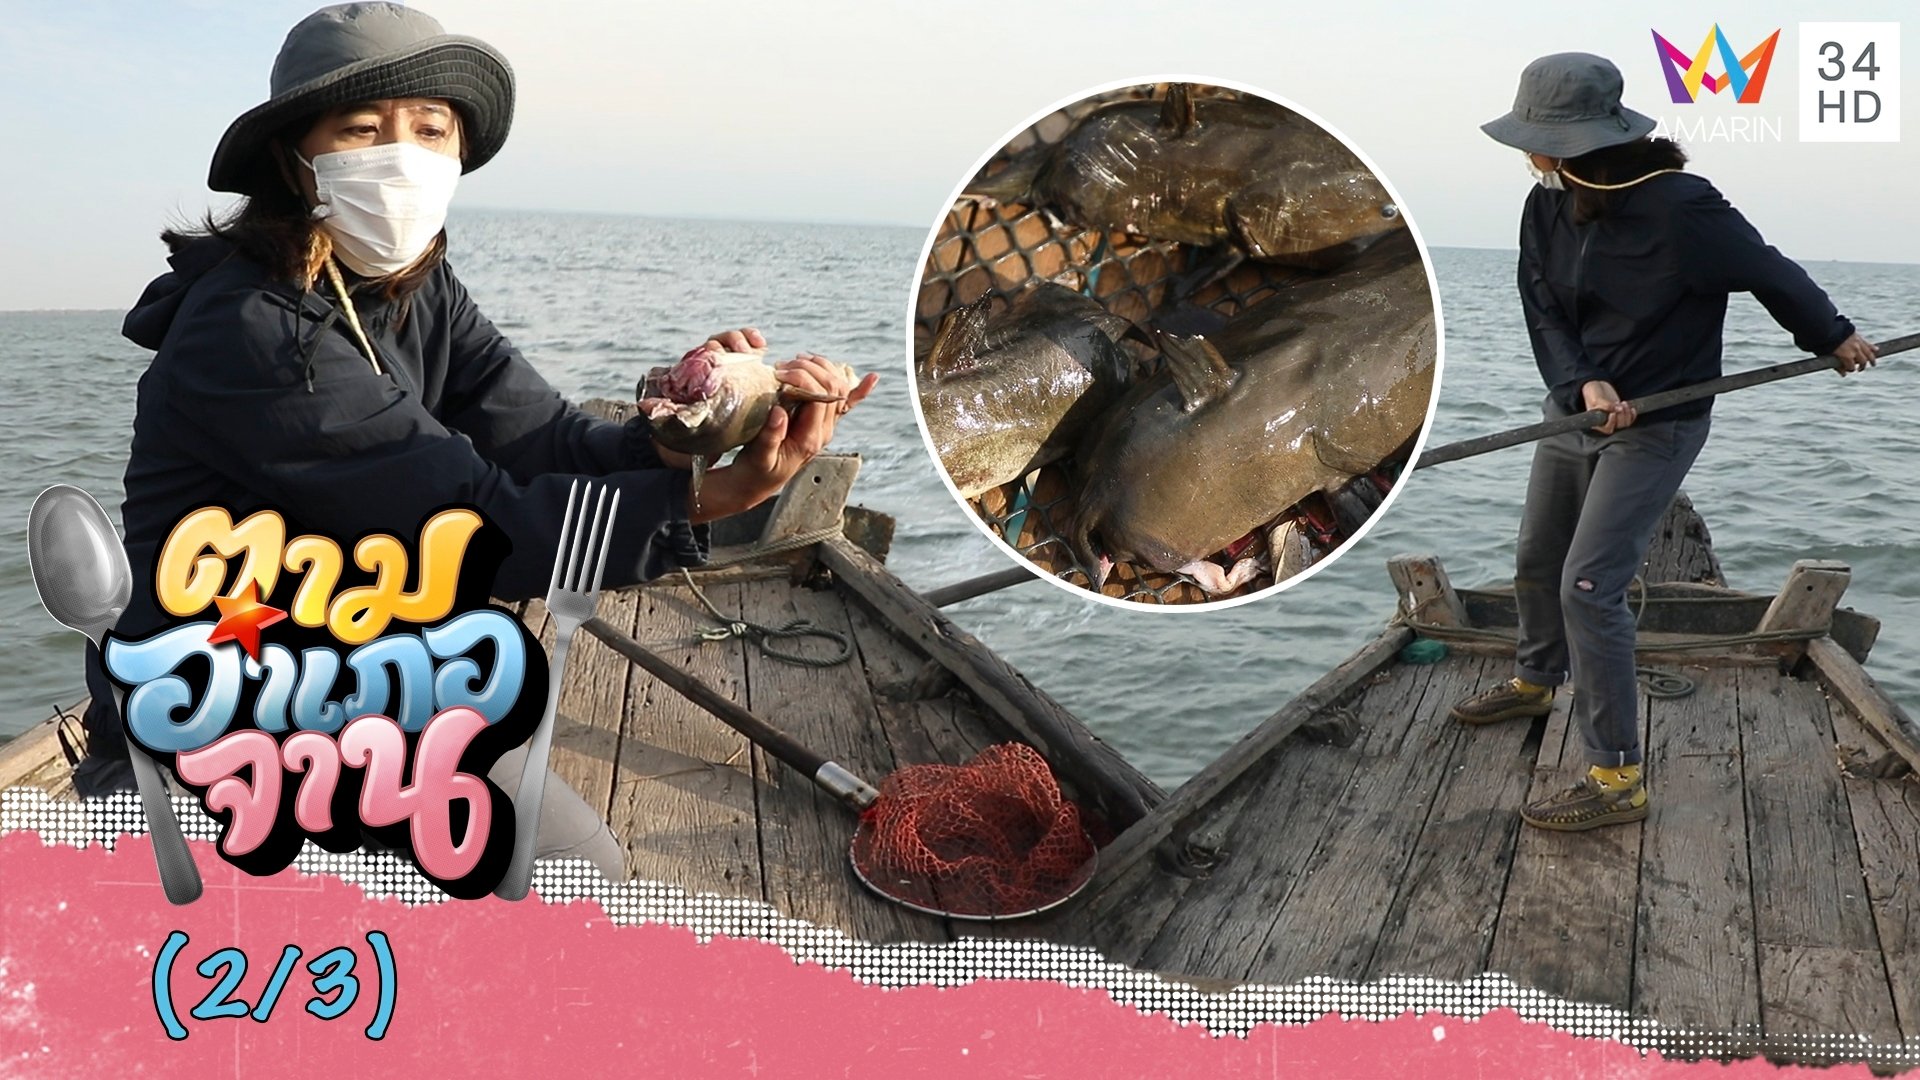 พลุ-โน ไม่ท้อ ช้อนหัวปลาดุกทะเล ครั้งนี้ไม่ง่าย | ตามอำเภอจาน | 22 ม.ค. 65 (2/3) | AMARIN TVHD34